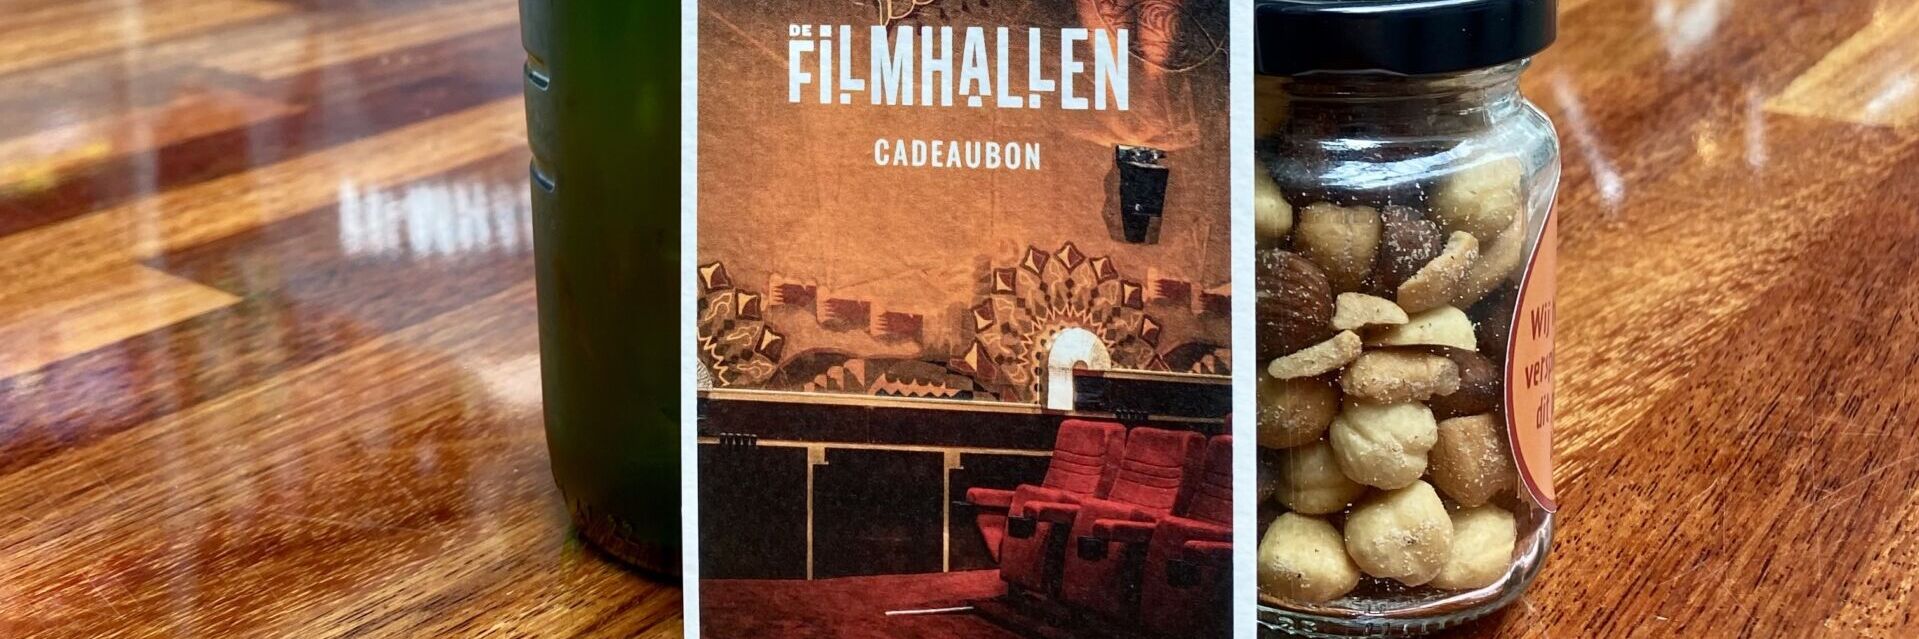 FilmHallen Cadeaubon